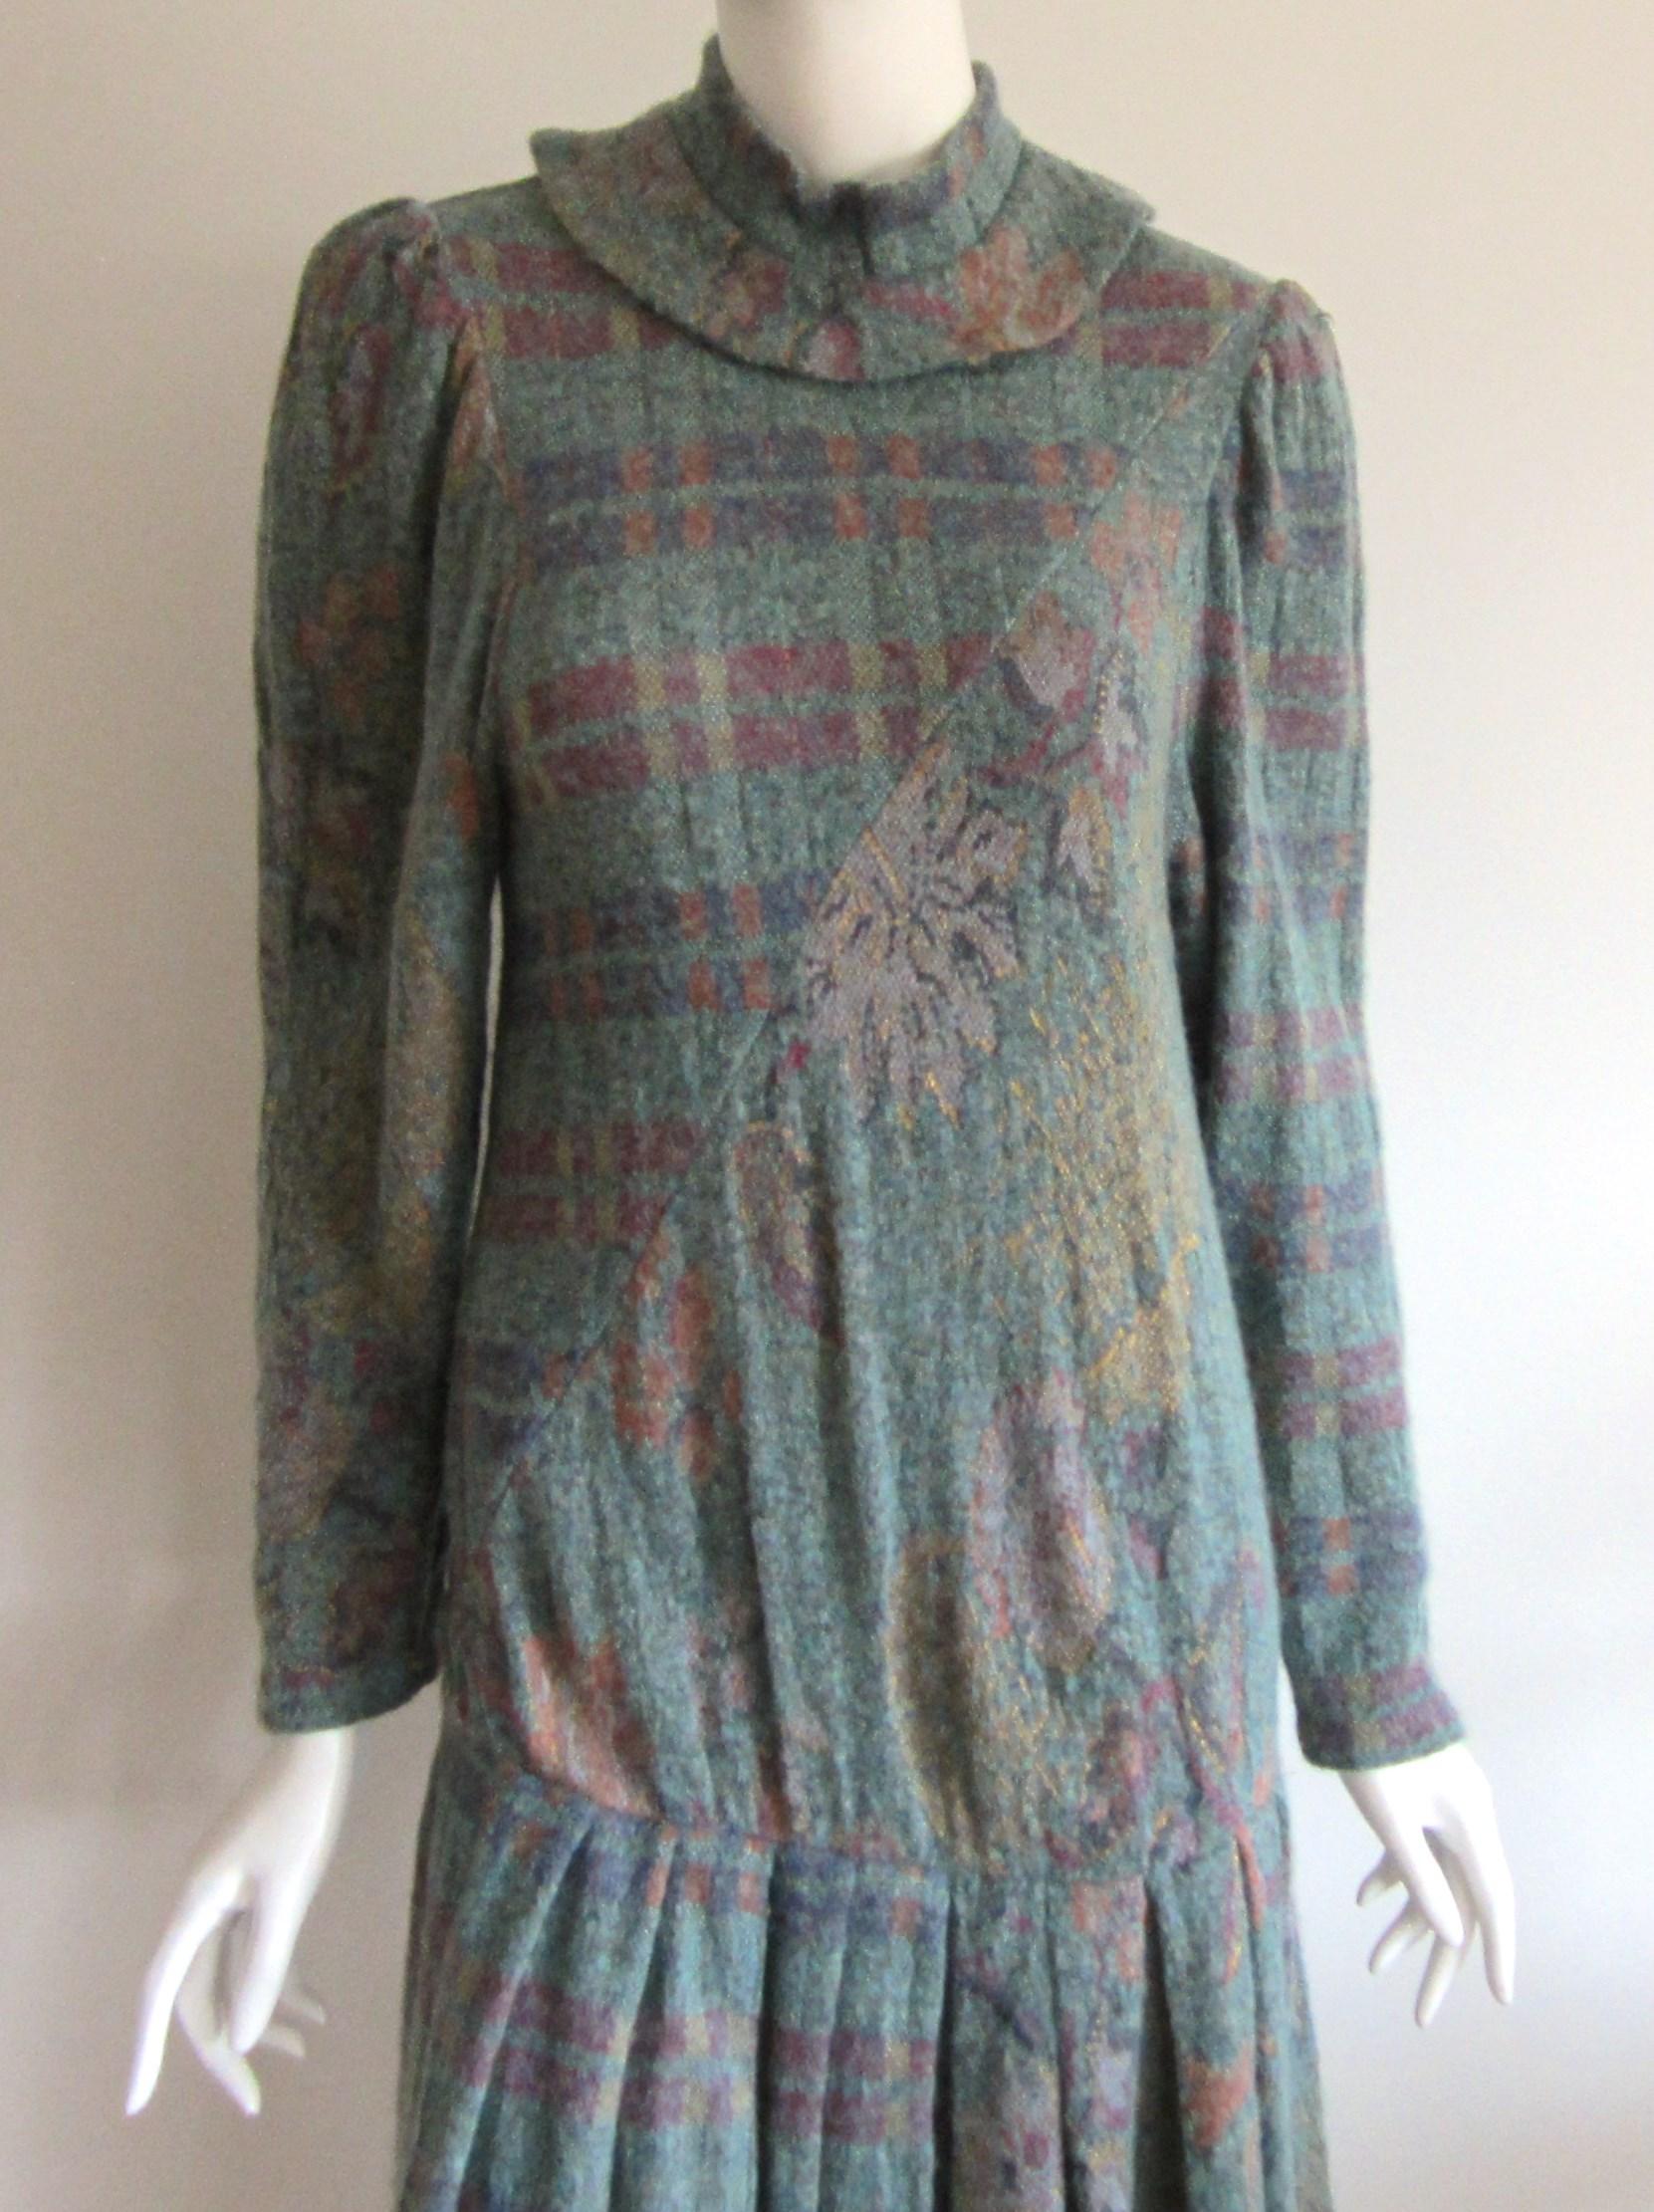 Jolie robe en laine mélangée Ted Lapidus multicolore (ce qui ressemble à un mélange de laine et de mohair). Il a un col de style madarin avec une jupe tombante. Motif floral et à carreaux. Mesures (étiquetées 36) Jusqu'à 34 pouces de poitrine -